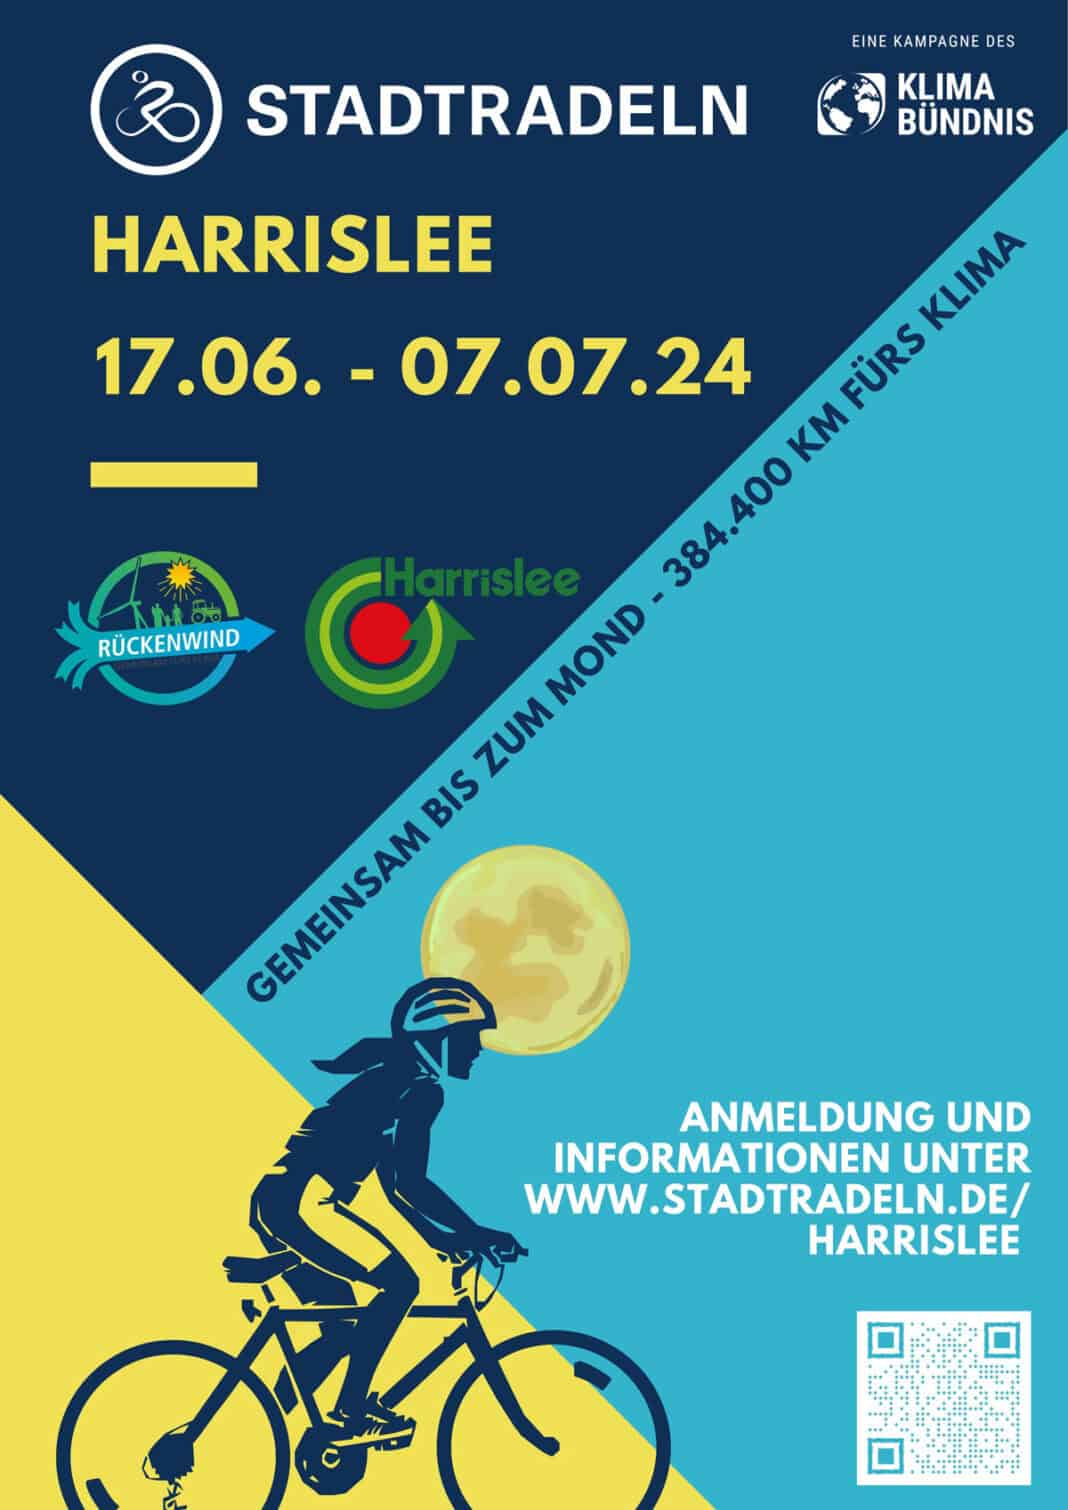 Fahrrad-Wettbewerb „STADTRADELN“ startet auch in Harrislee erneut